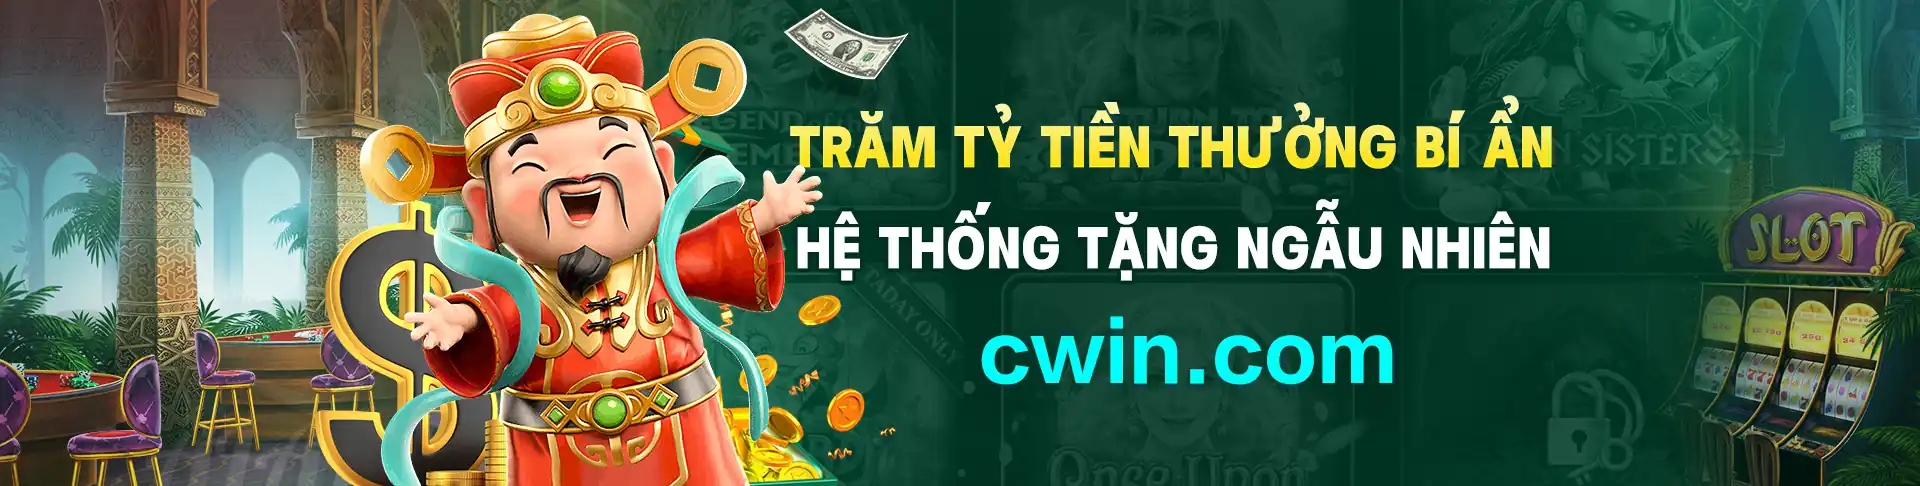 Cwin - Trang chủ sòng bạc trực tuyến Cwin05